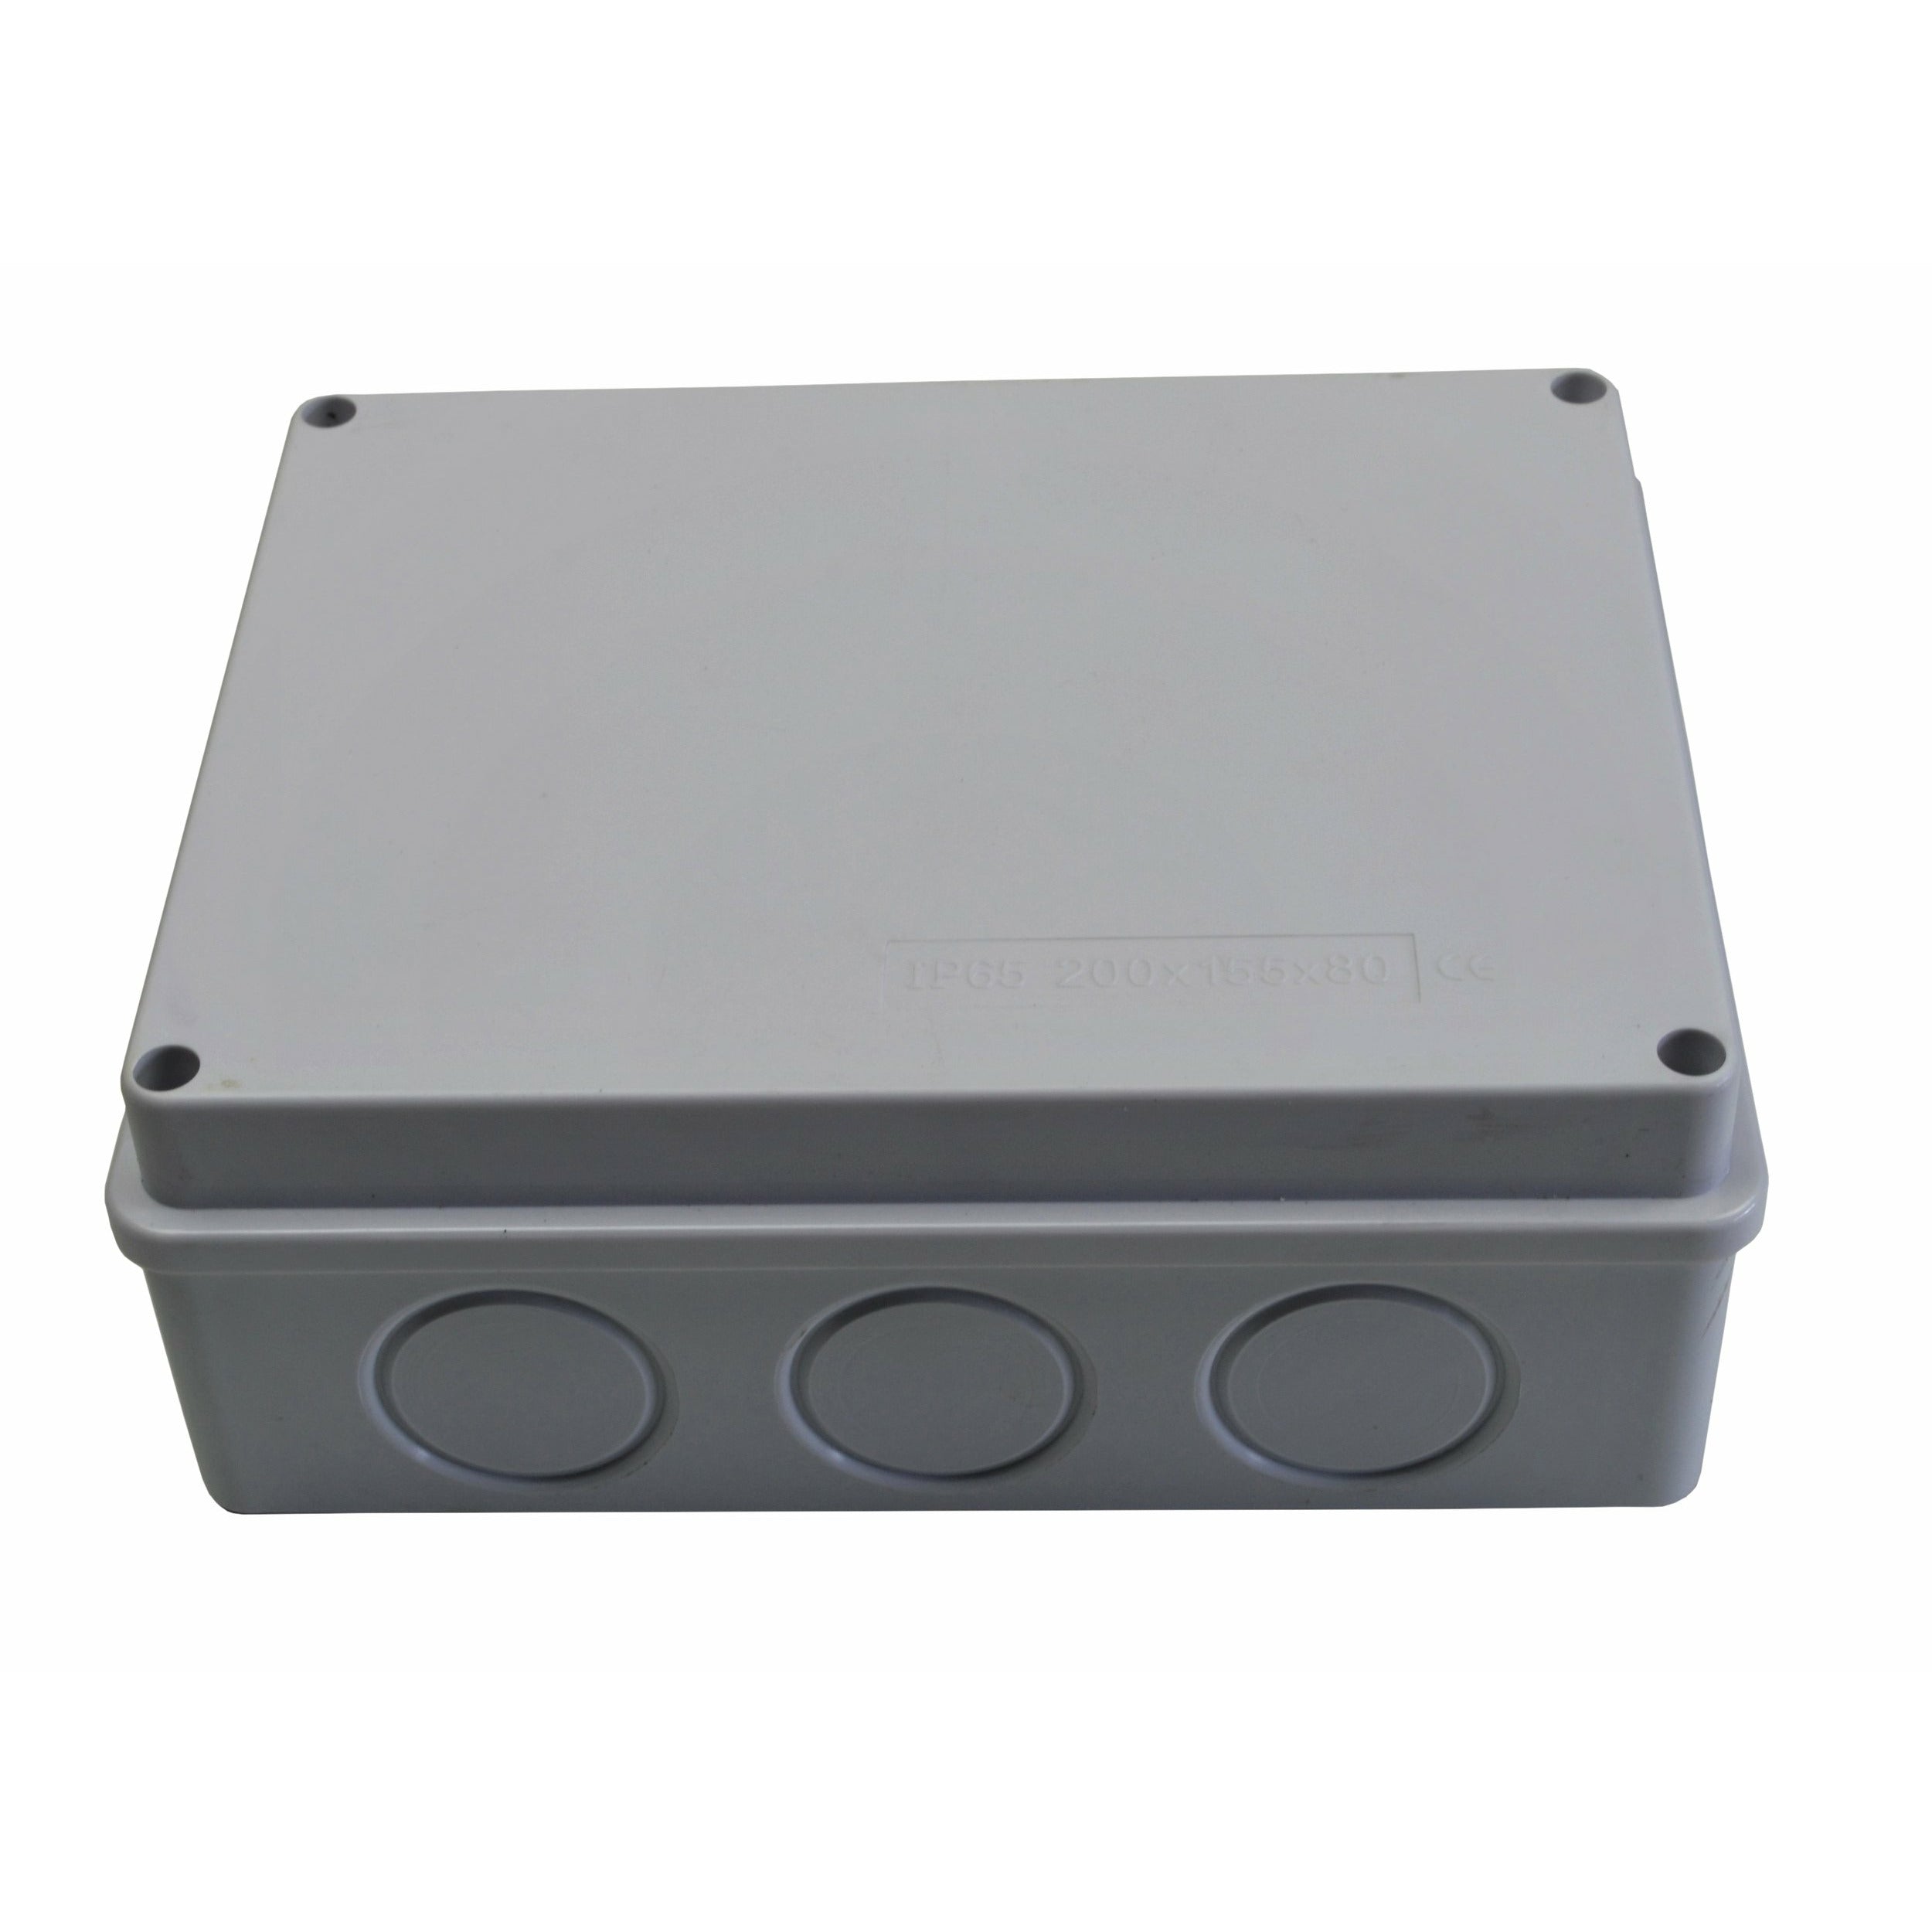 200x155x80 mm no grommet IP65 Waterproof Junction Box